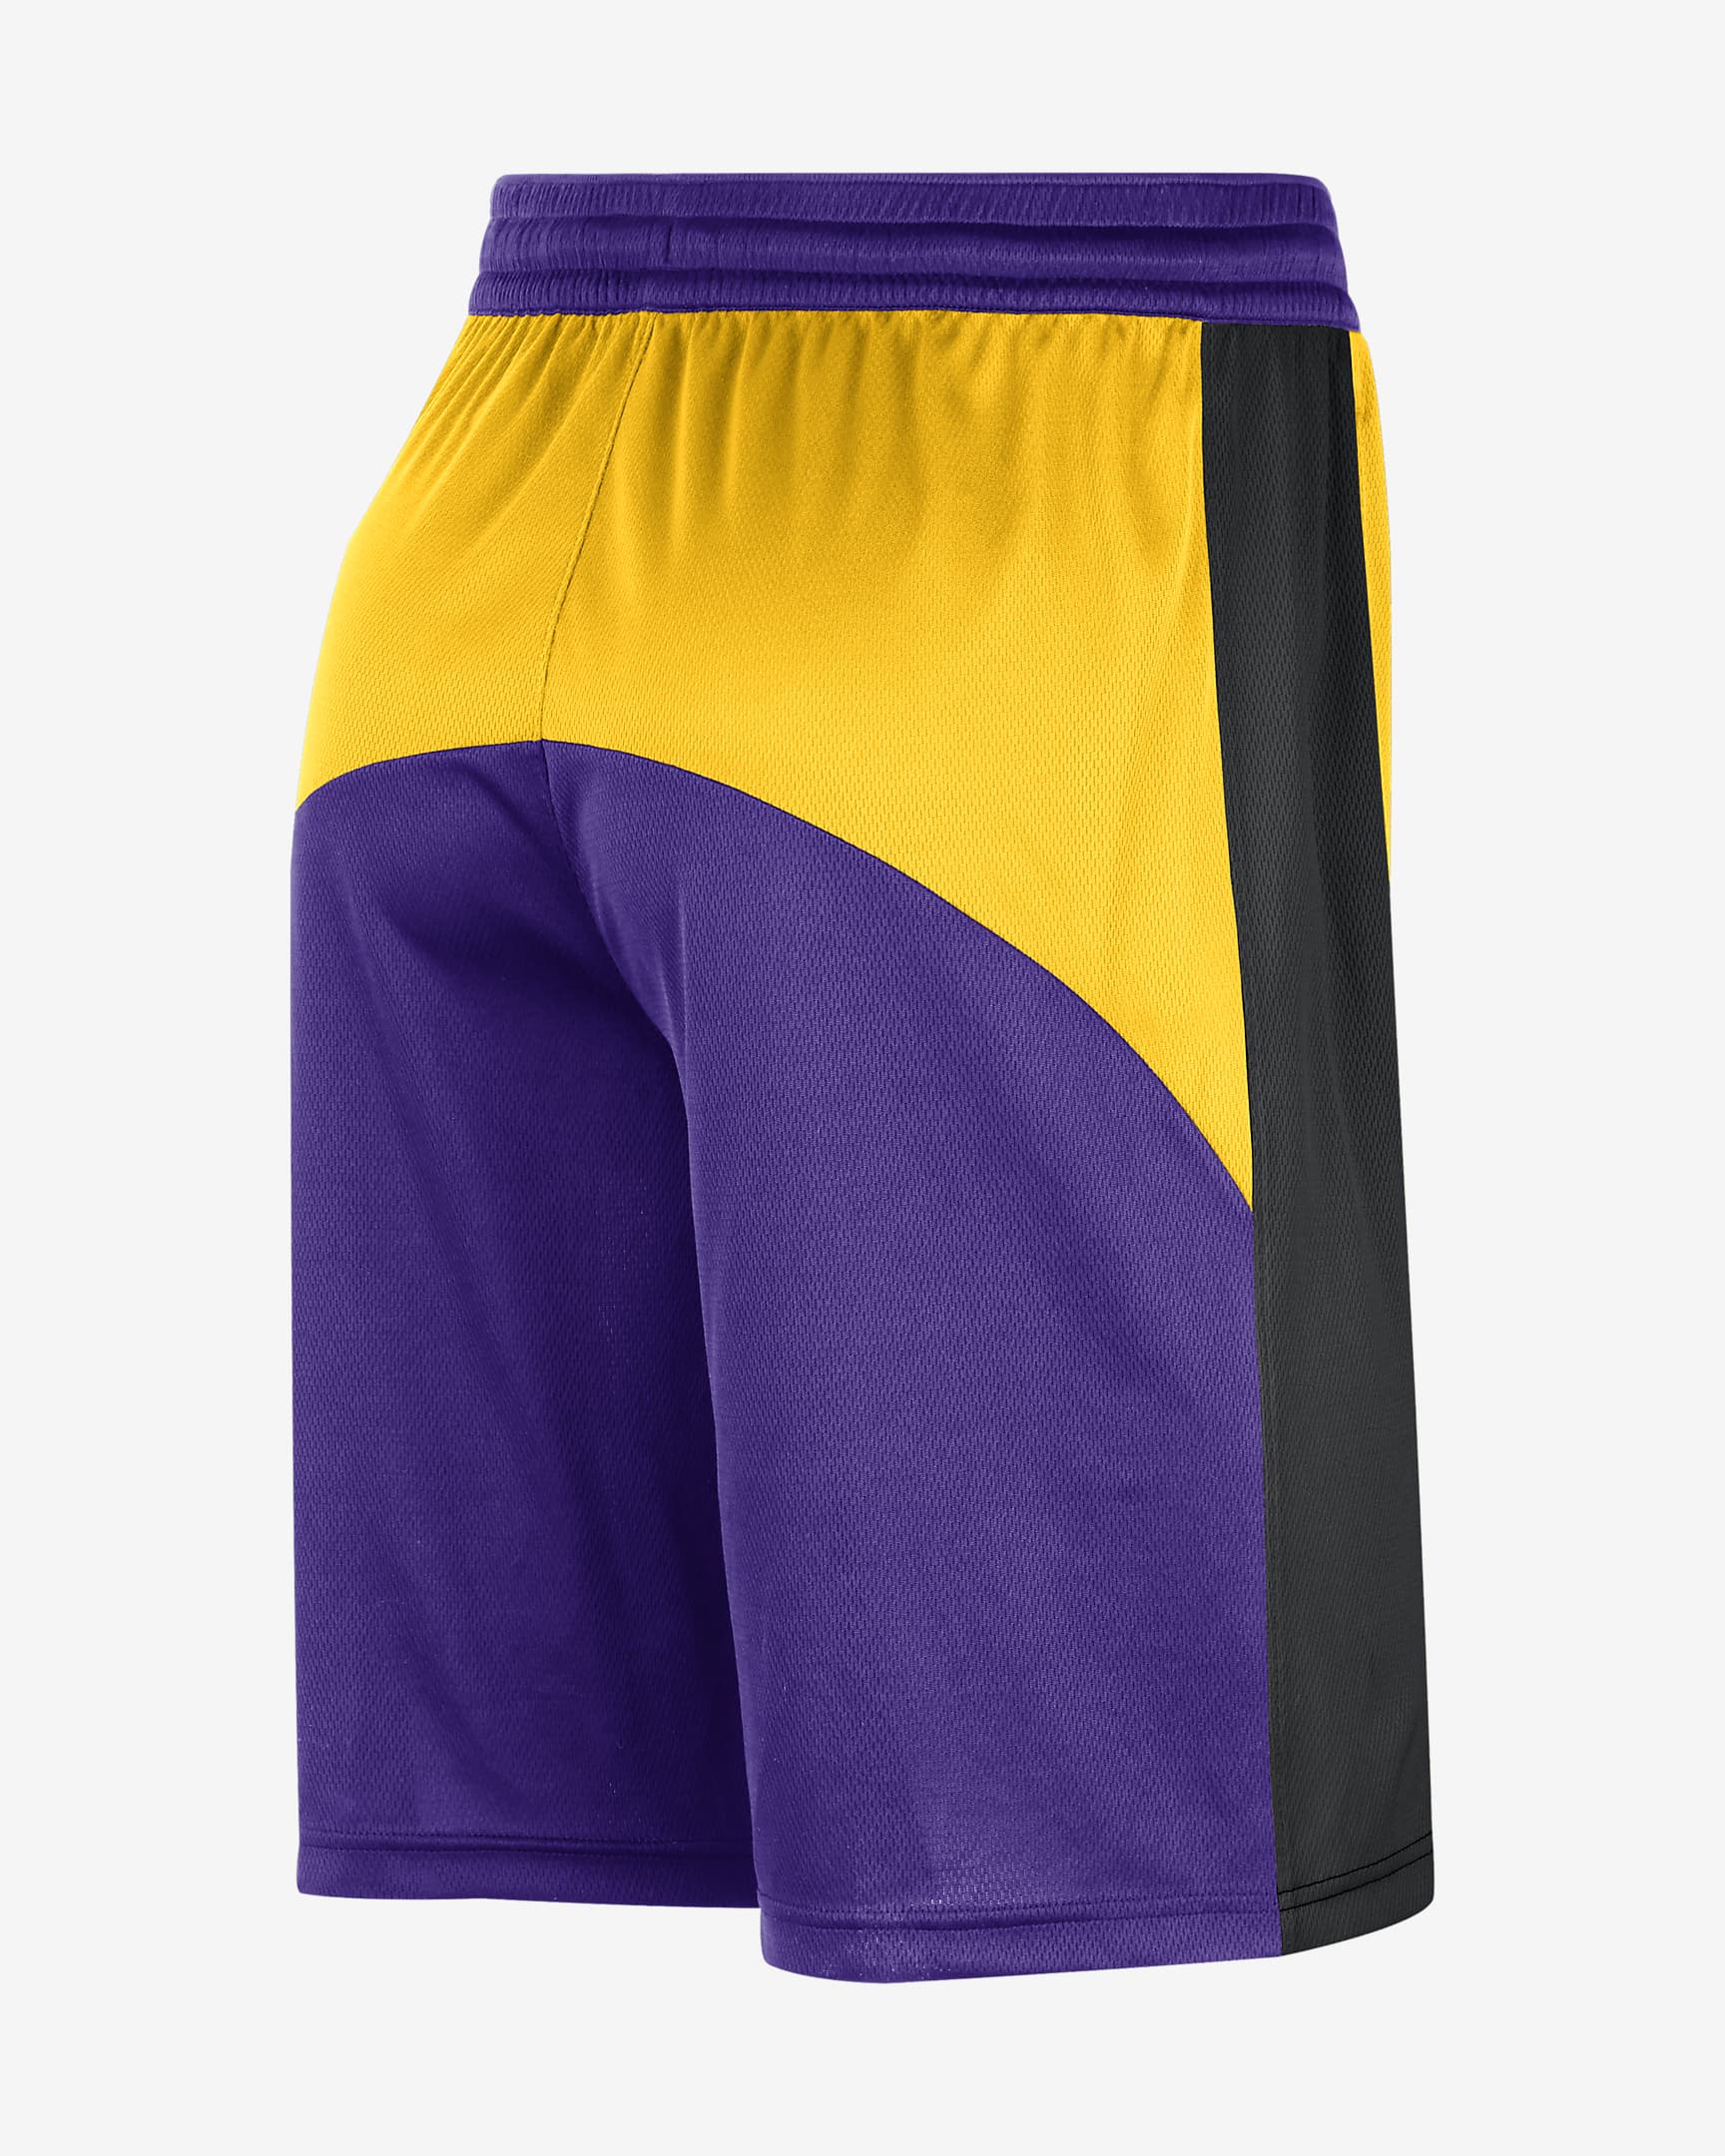 Los Angeles Lakers Starting 5 Men's Nike Dri-FIT NBA Shorts. Nike.com